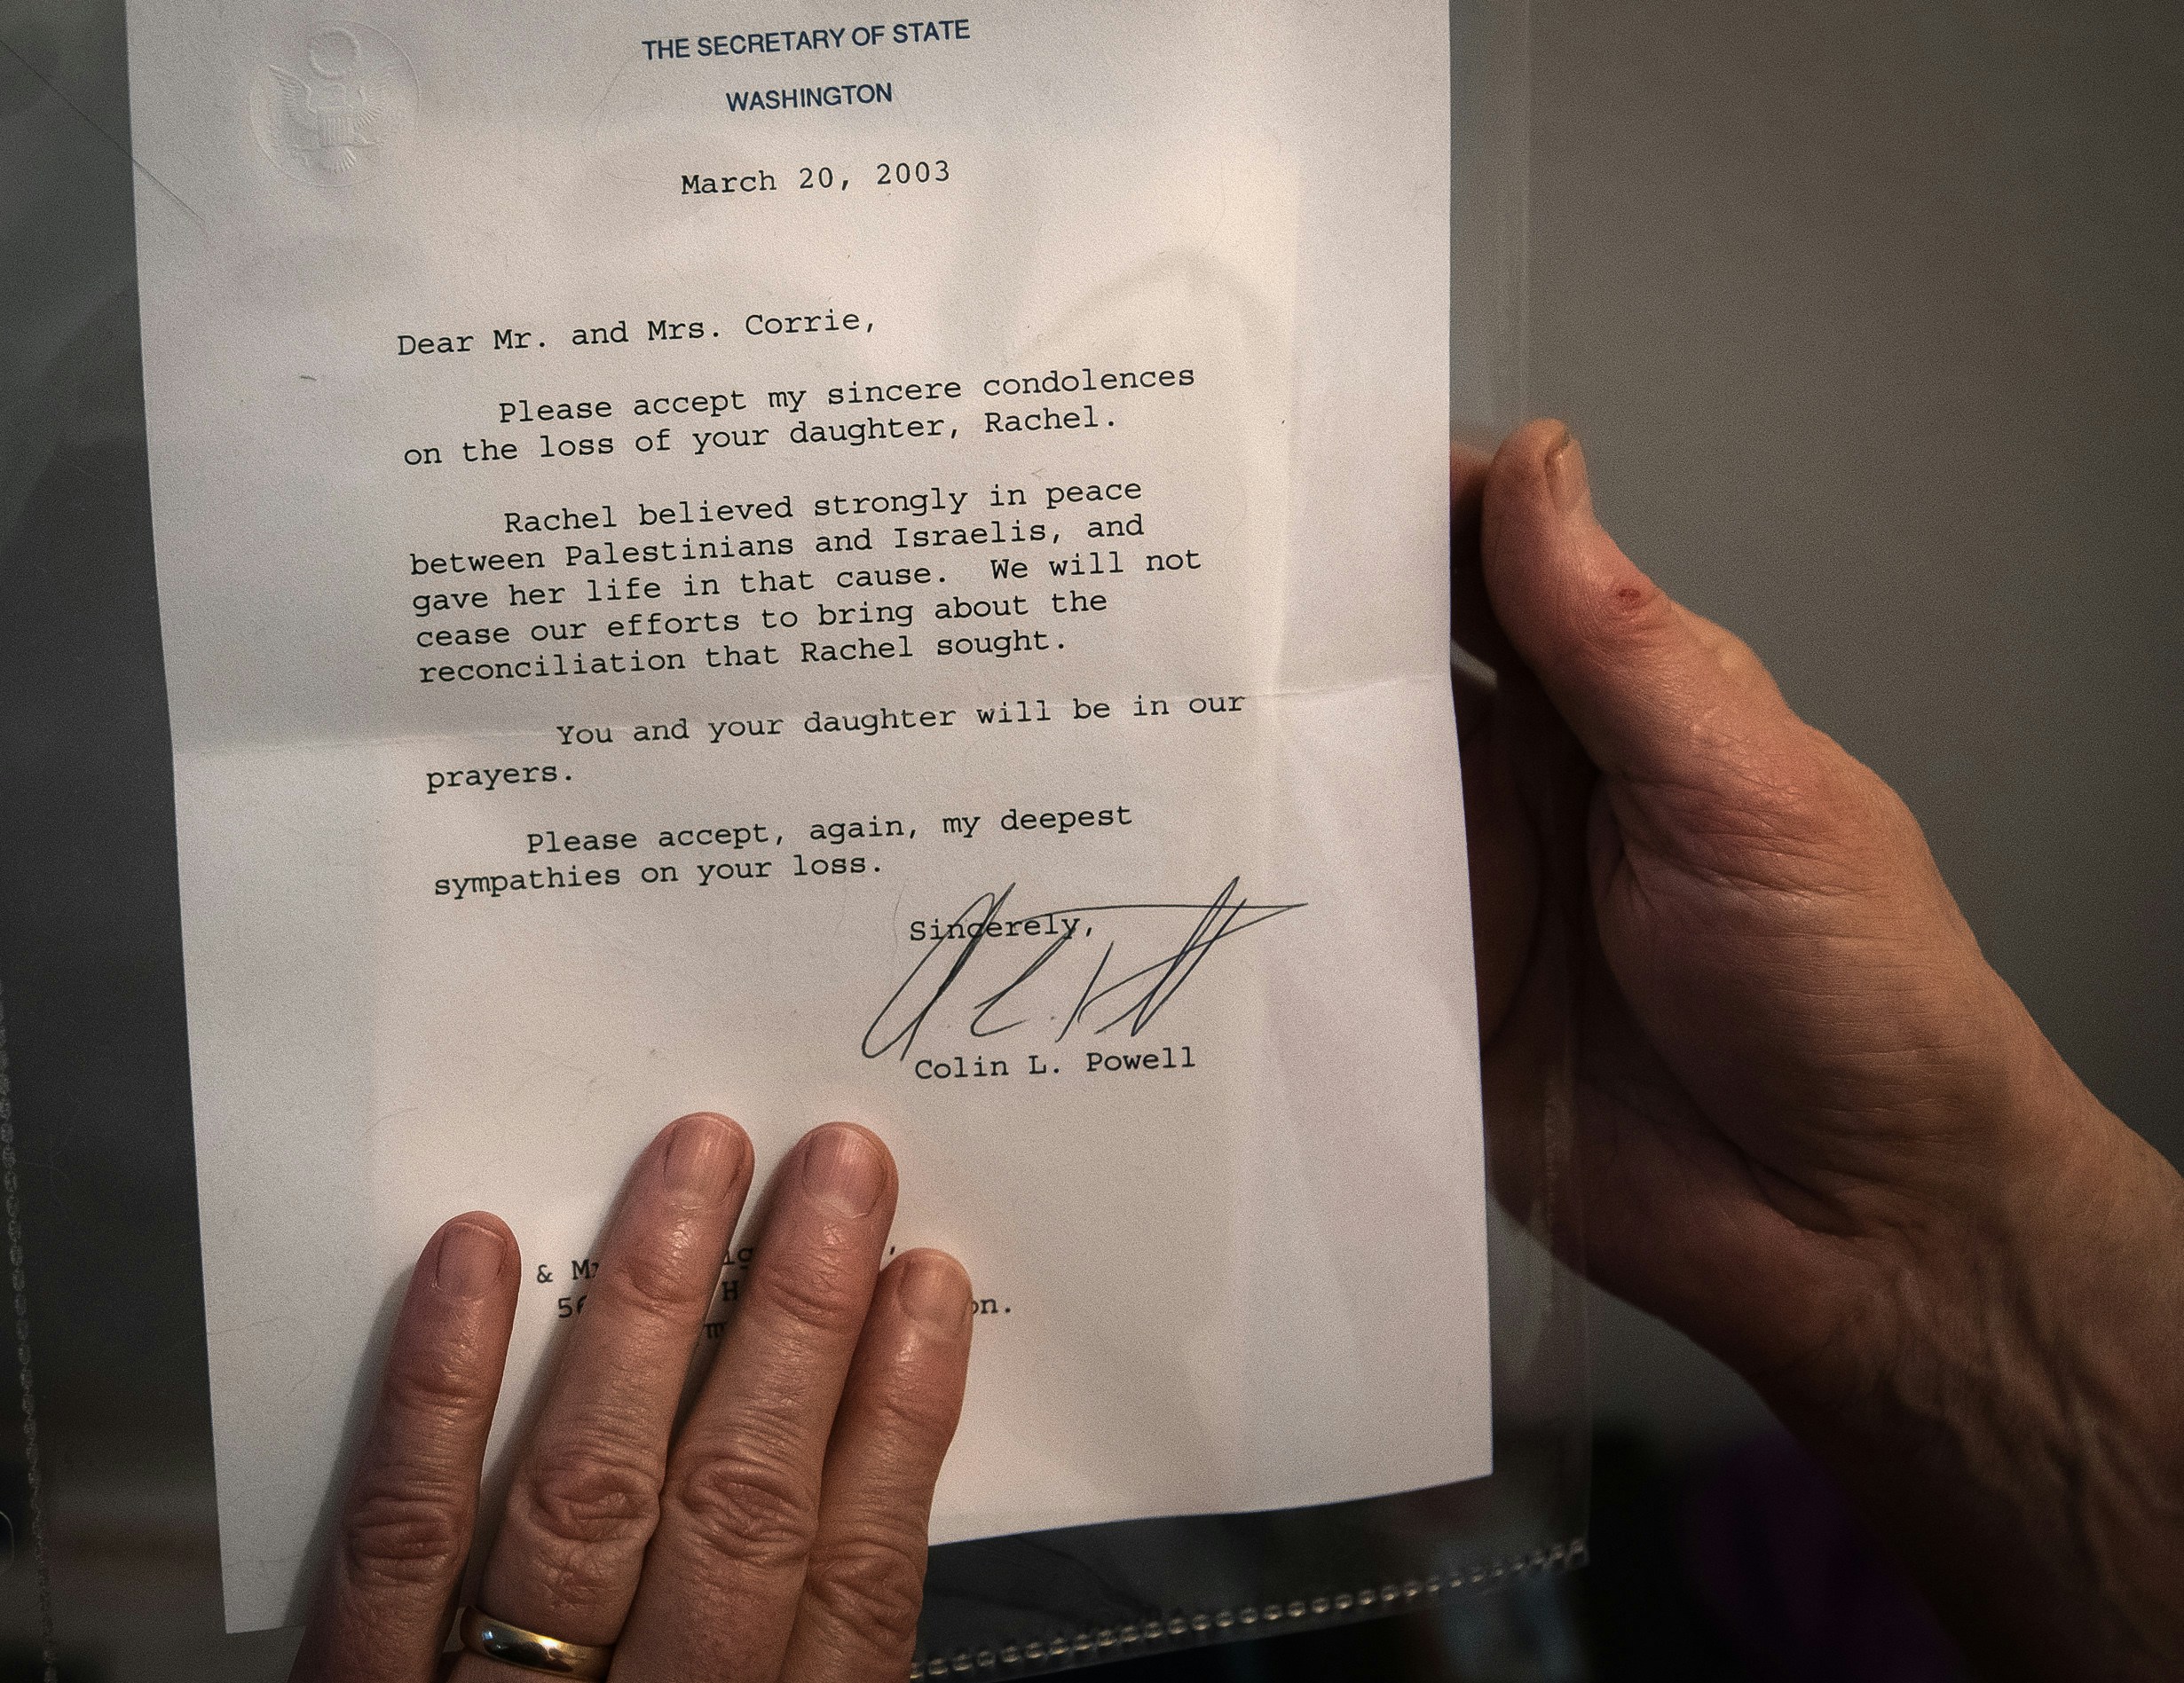 سيندي كوري تحمل رسالة من كولن باول تعرب عن تعازيها لوفاة ابنتها راشيل. خلود عيد للاعتراض